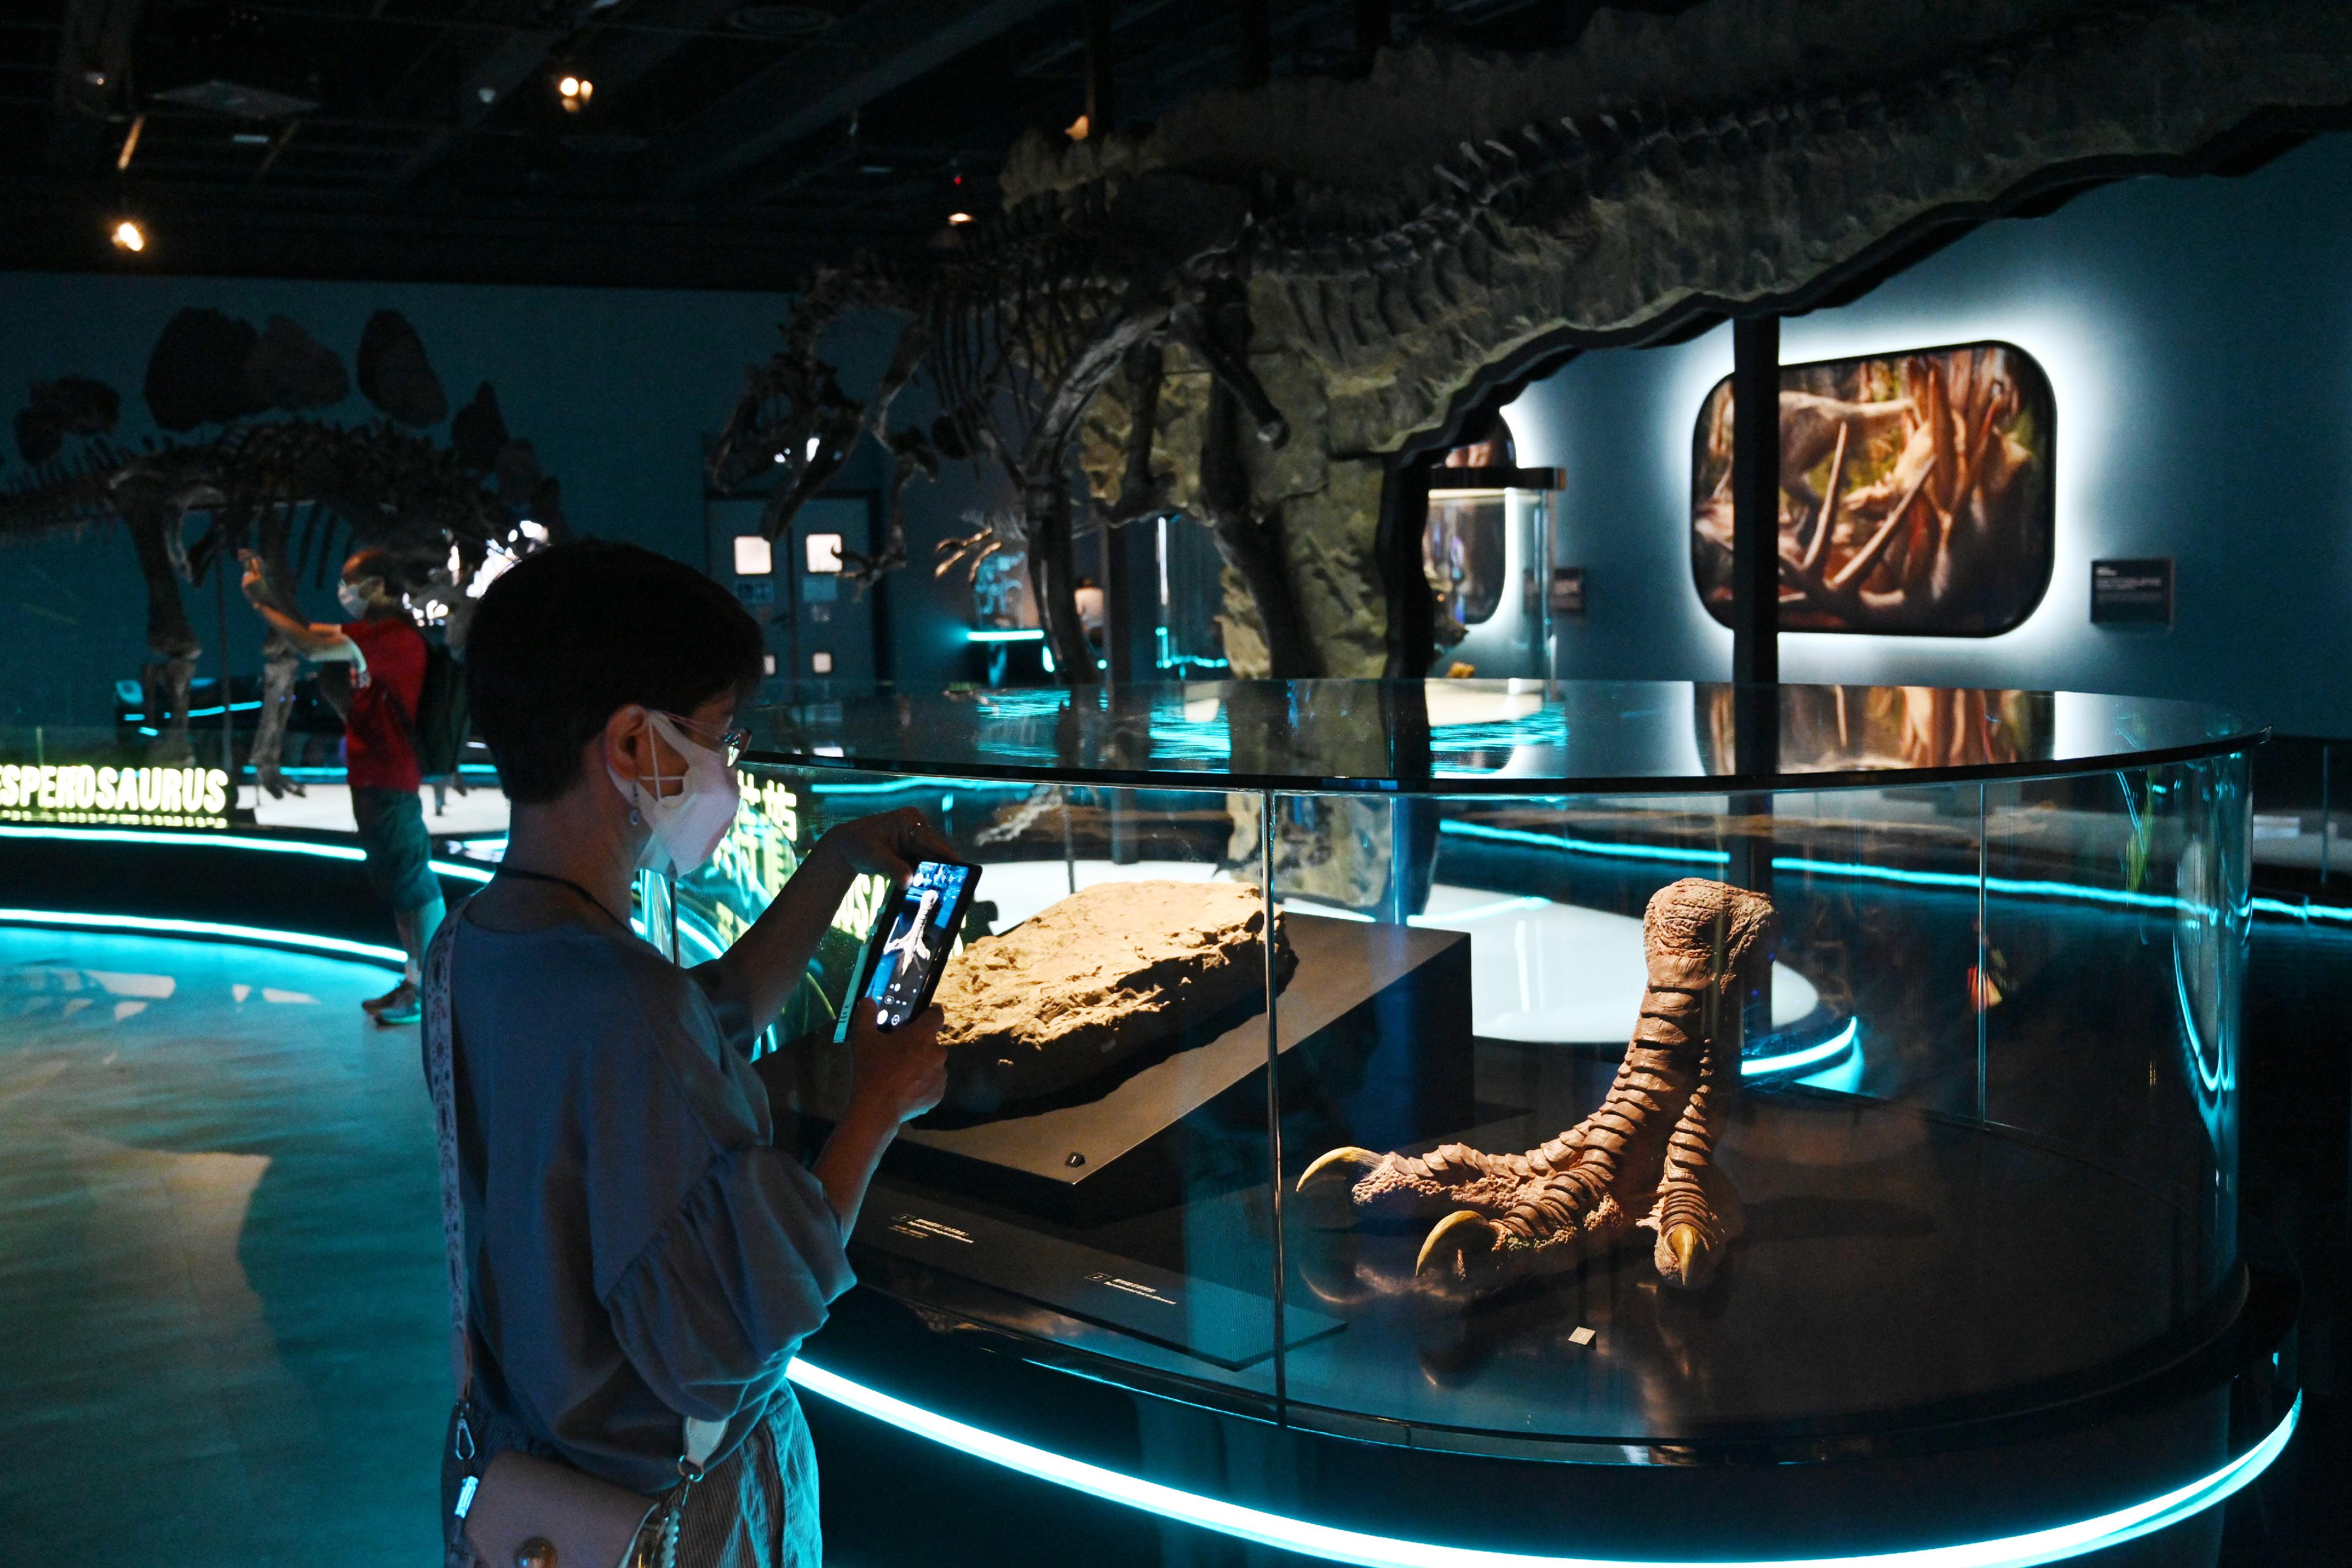 香港科學館舉辦的免費大型恐龍展覽「香港賽馬會呈獻系列：八大‧尋龍記」開展至今深受市民歡迎。香港科學館將延長展期至明年二月二十二日。圖示參觀者欣賞展覽廳內的異特龍足部模型。